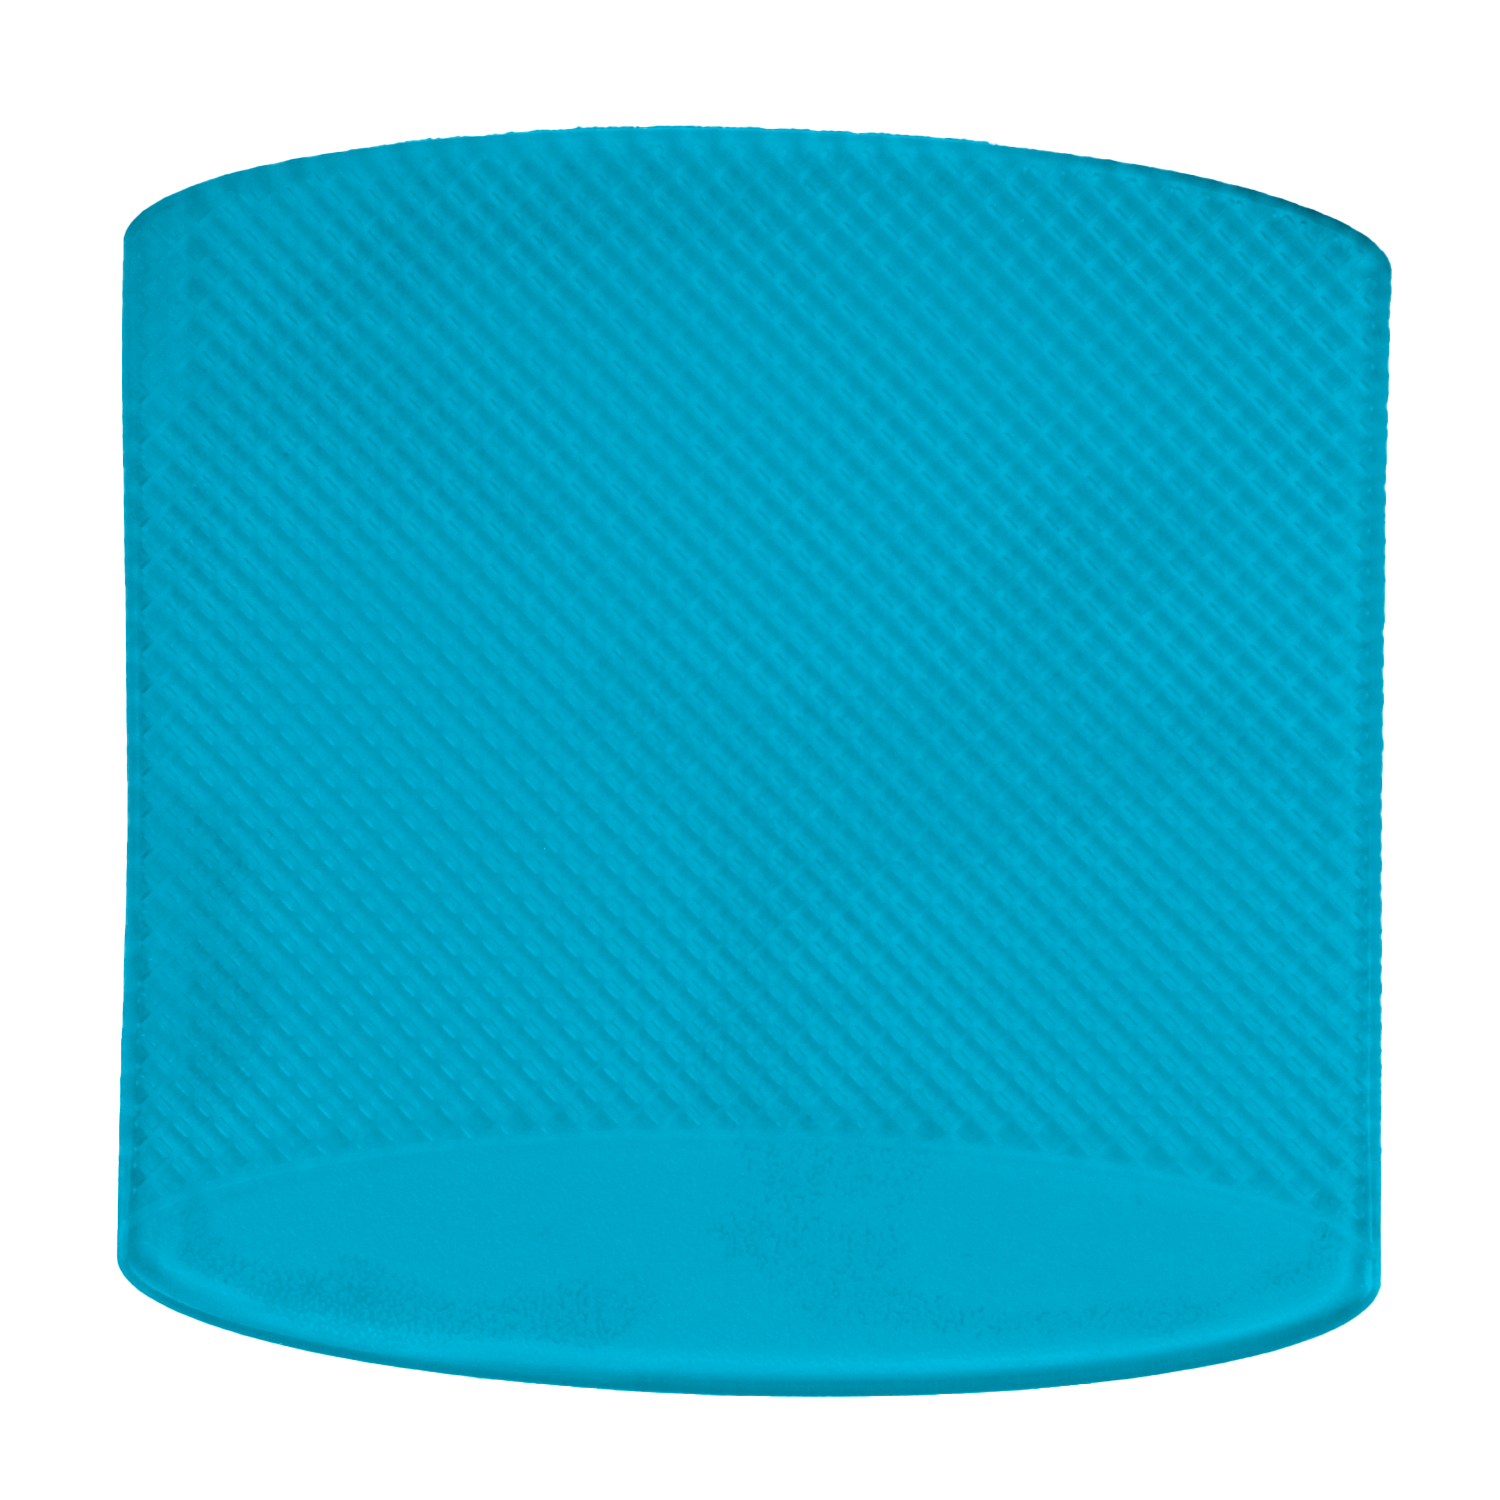 фото Противоскользящий полиуретановый защитная подложка для авто и на стол цвет голубой jinn